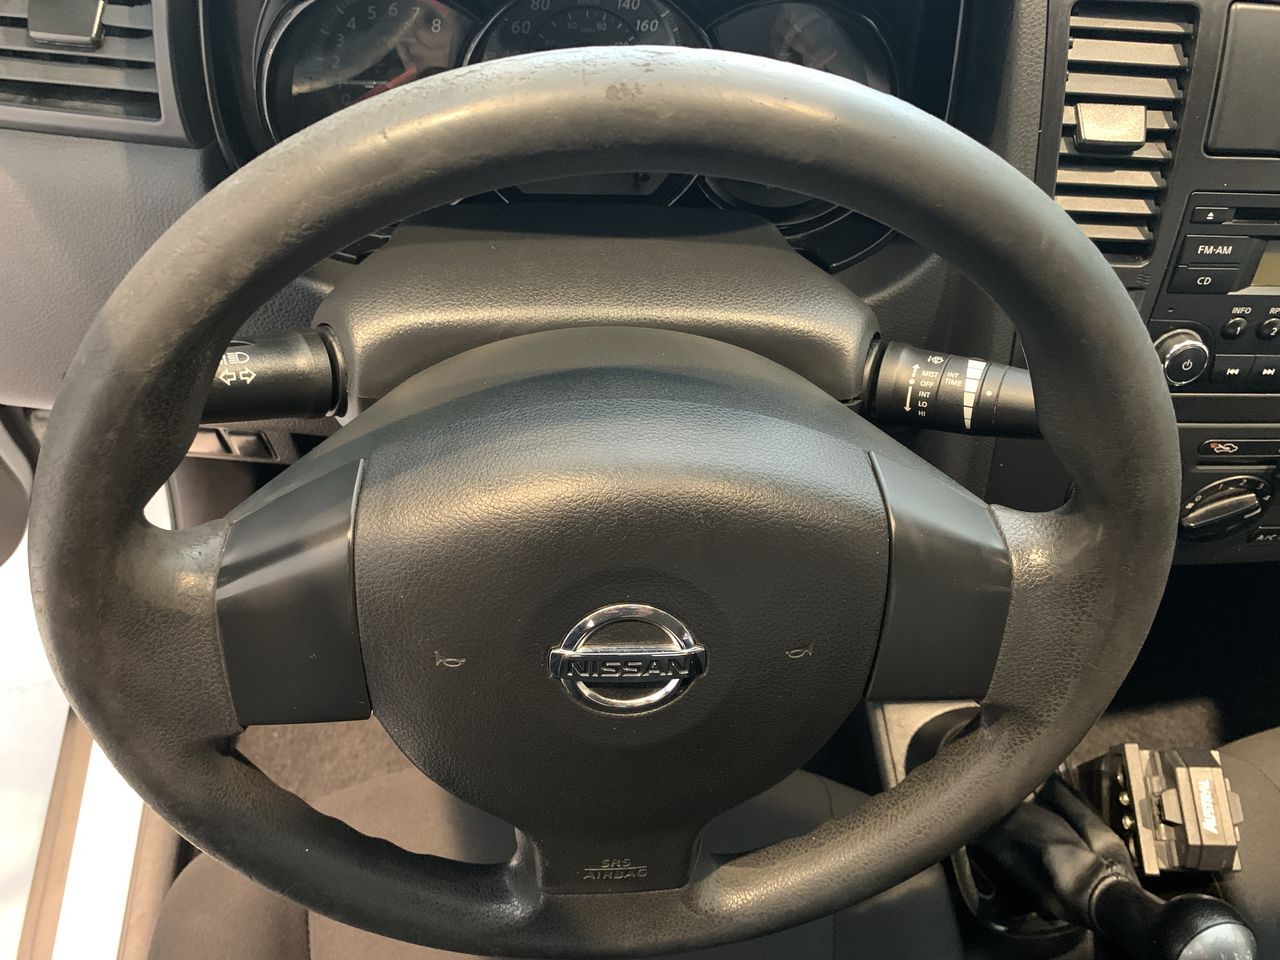 Nissan Tiida 2017